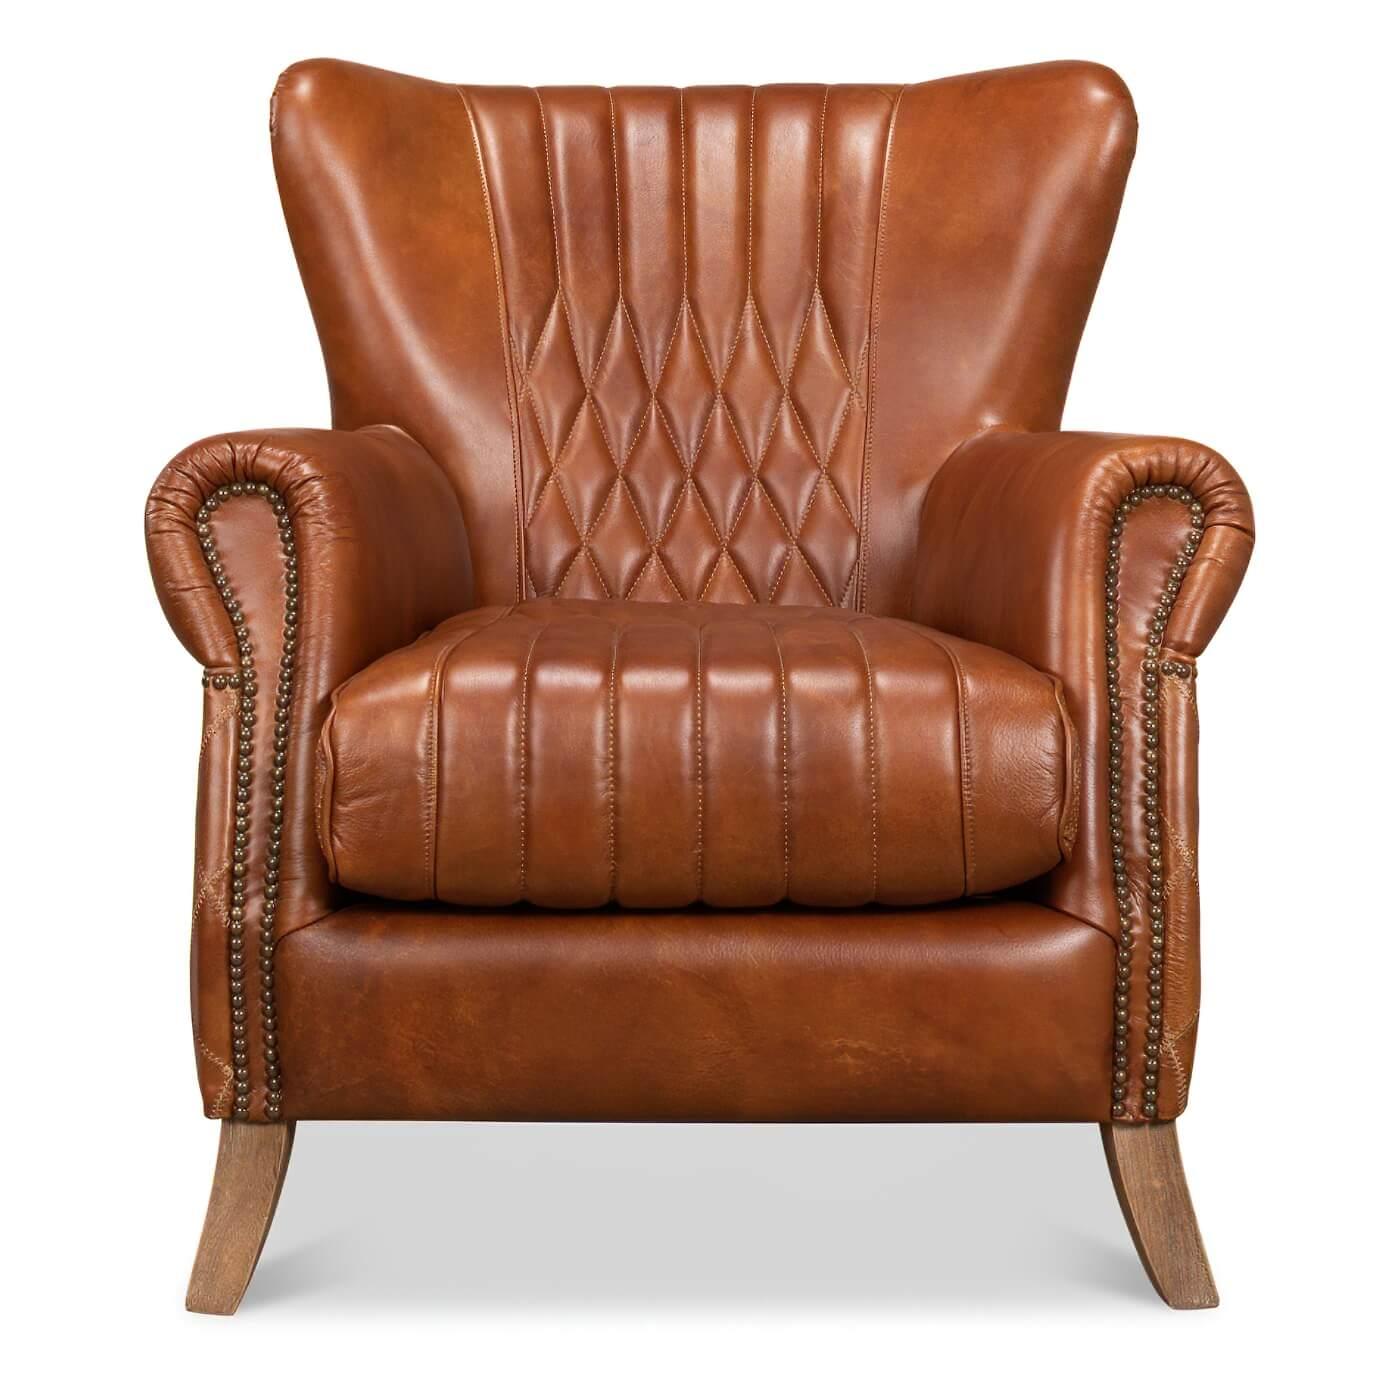 Fauteuil classique en cuir matelassé avec garnitures en têtes de clous. Cette chaise classique est revêtue de notre cuir brun de Cuba et présente un motif matelassé sur son dossier et ses côtés intérieurs et extérieurs. Ses accoudoirs roulés et son